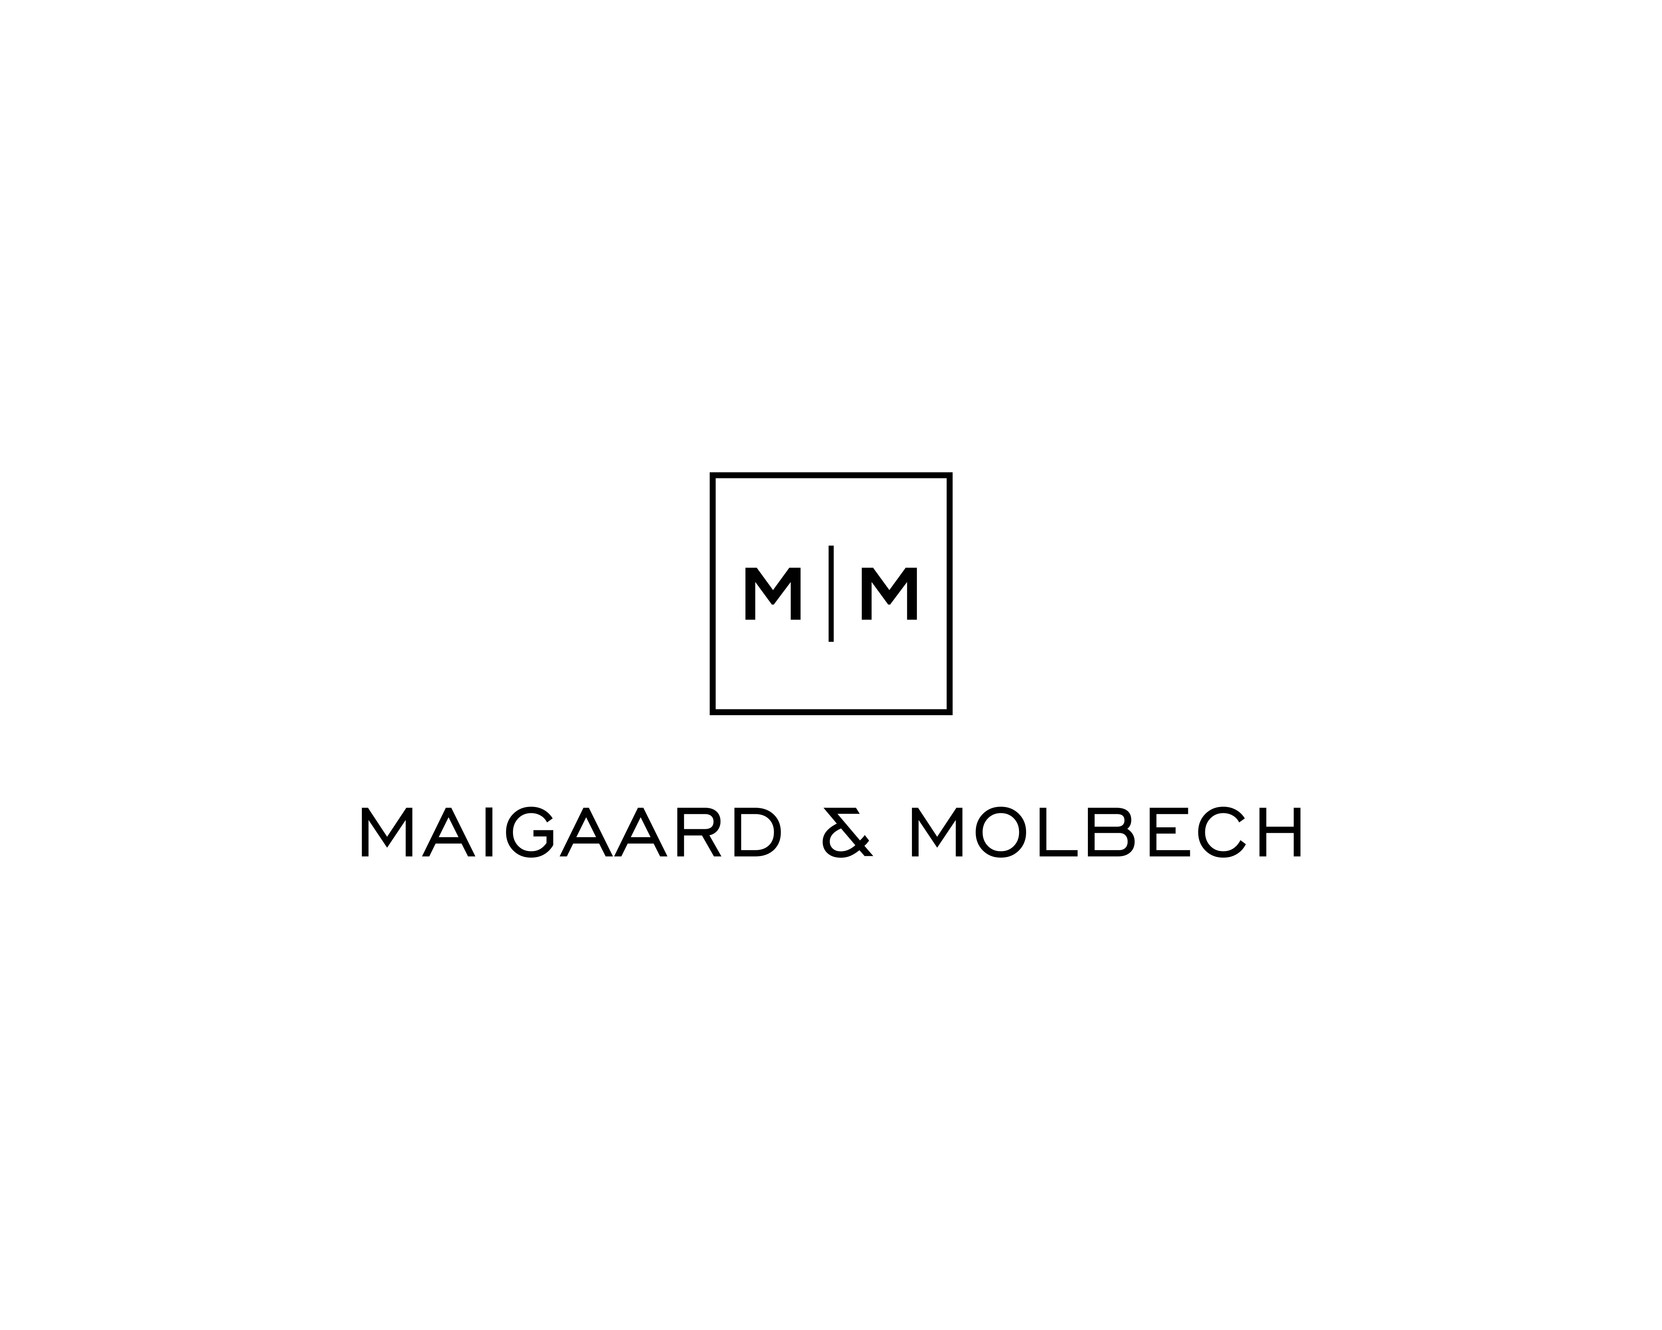 Maigaard & Molbech